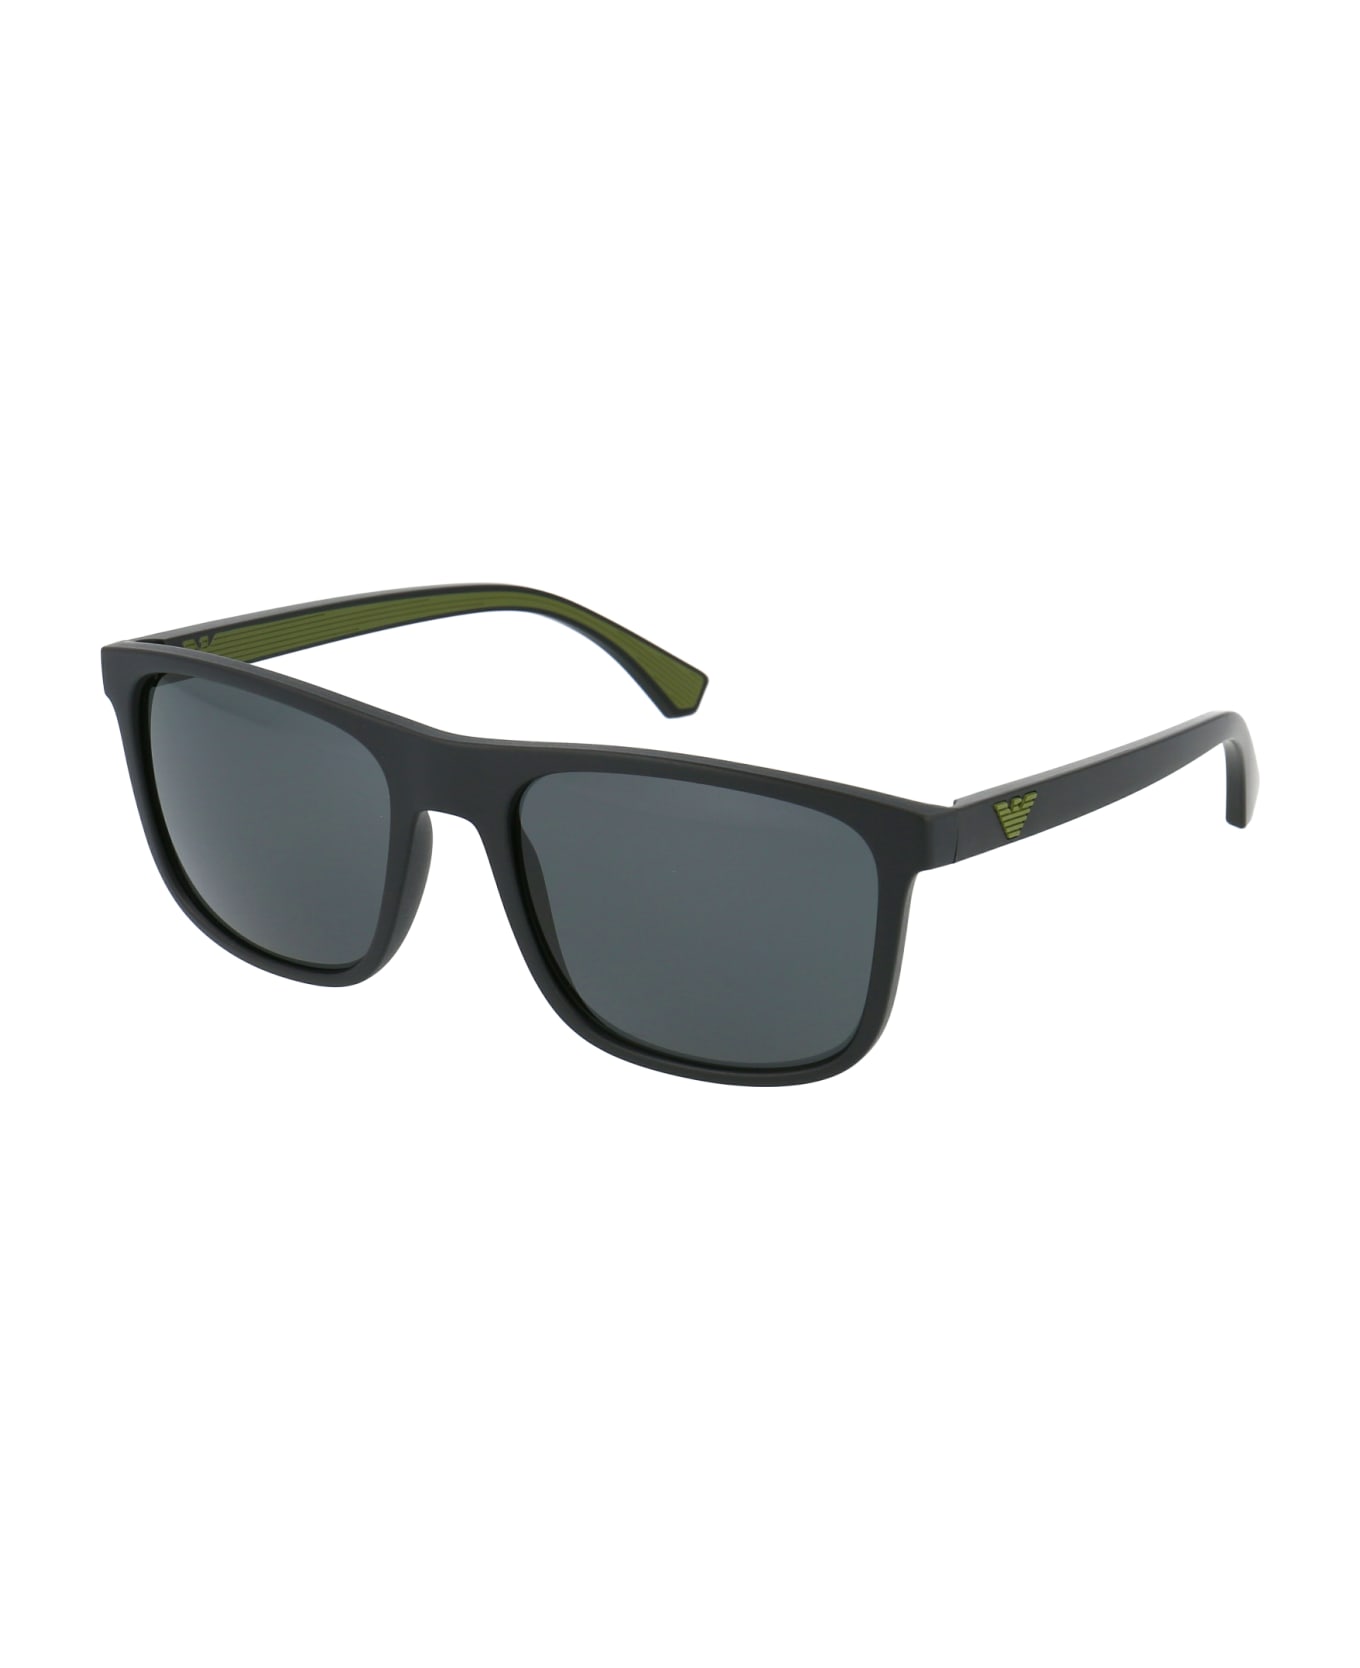 Emporio Armani 0ea4129 Sunglasses - 504287 MATTE BLACK